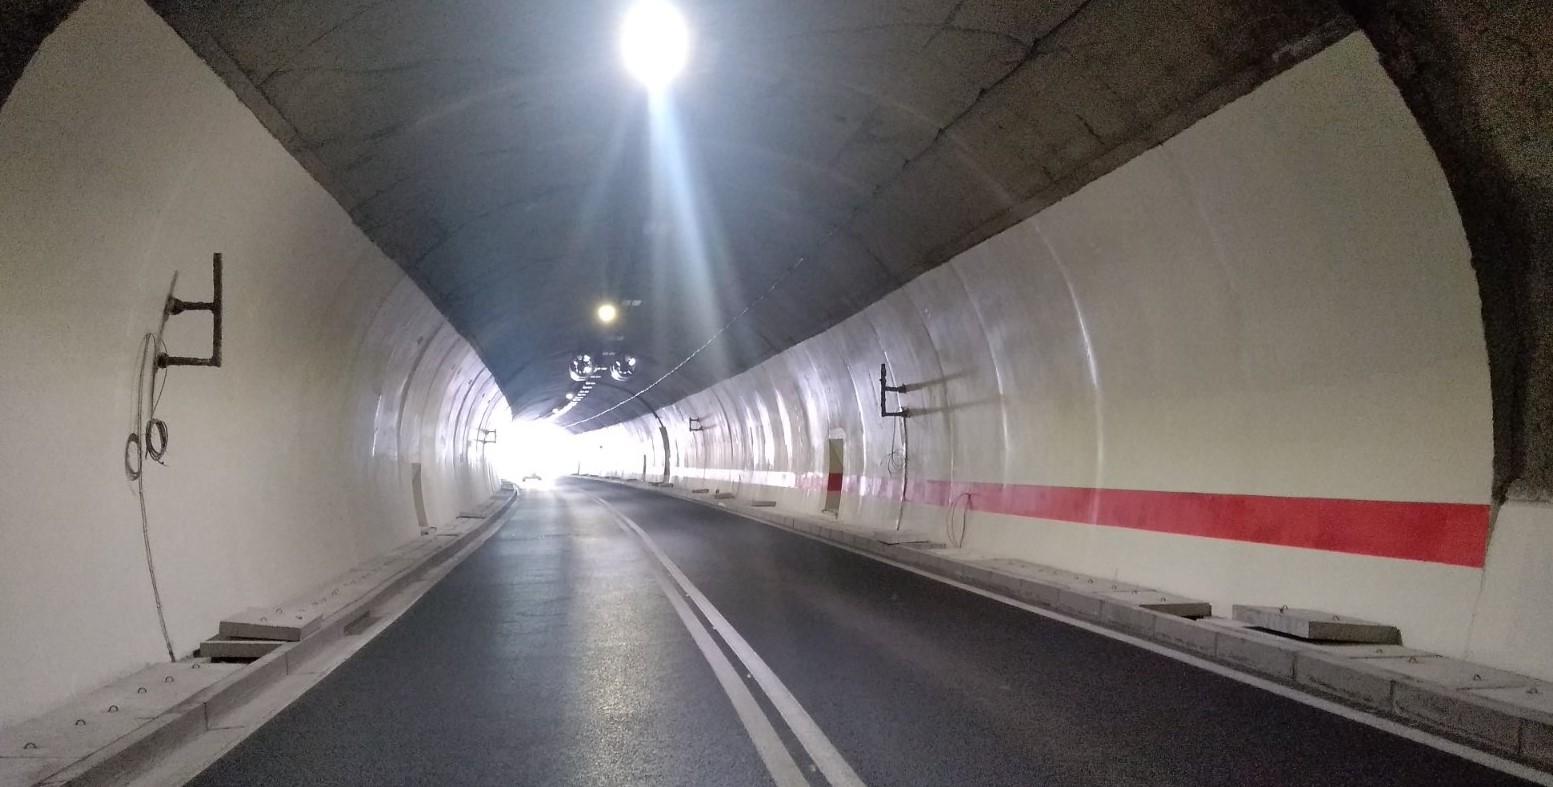 Završetak radova na tunelu Vranduk 2 očekuje se za deset dana